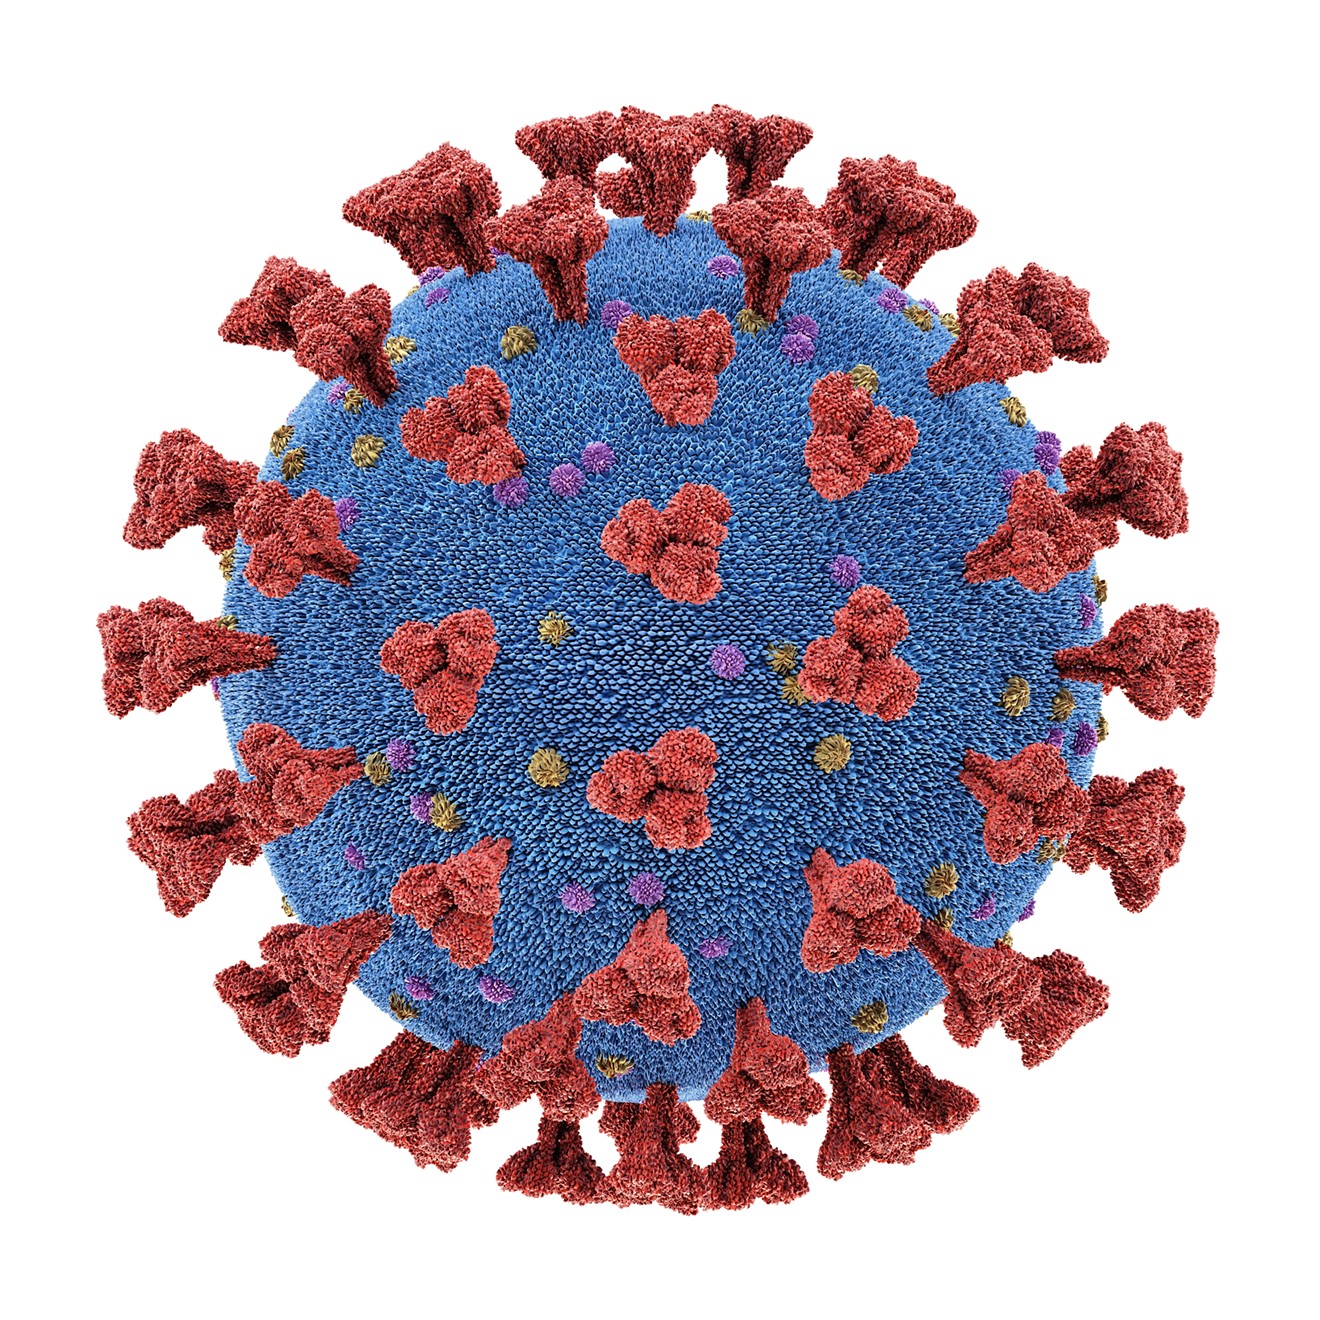 This thing, the coronavirus, is making everything weird.